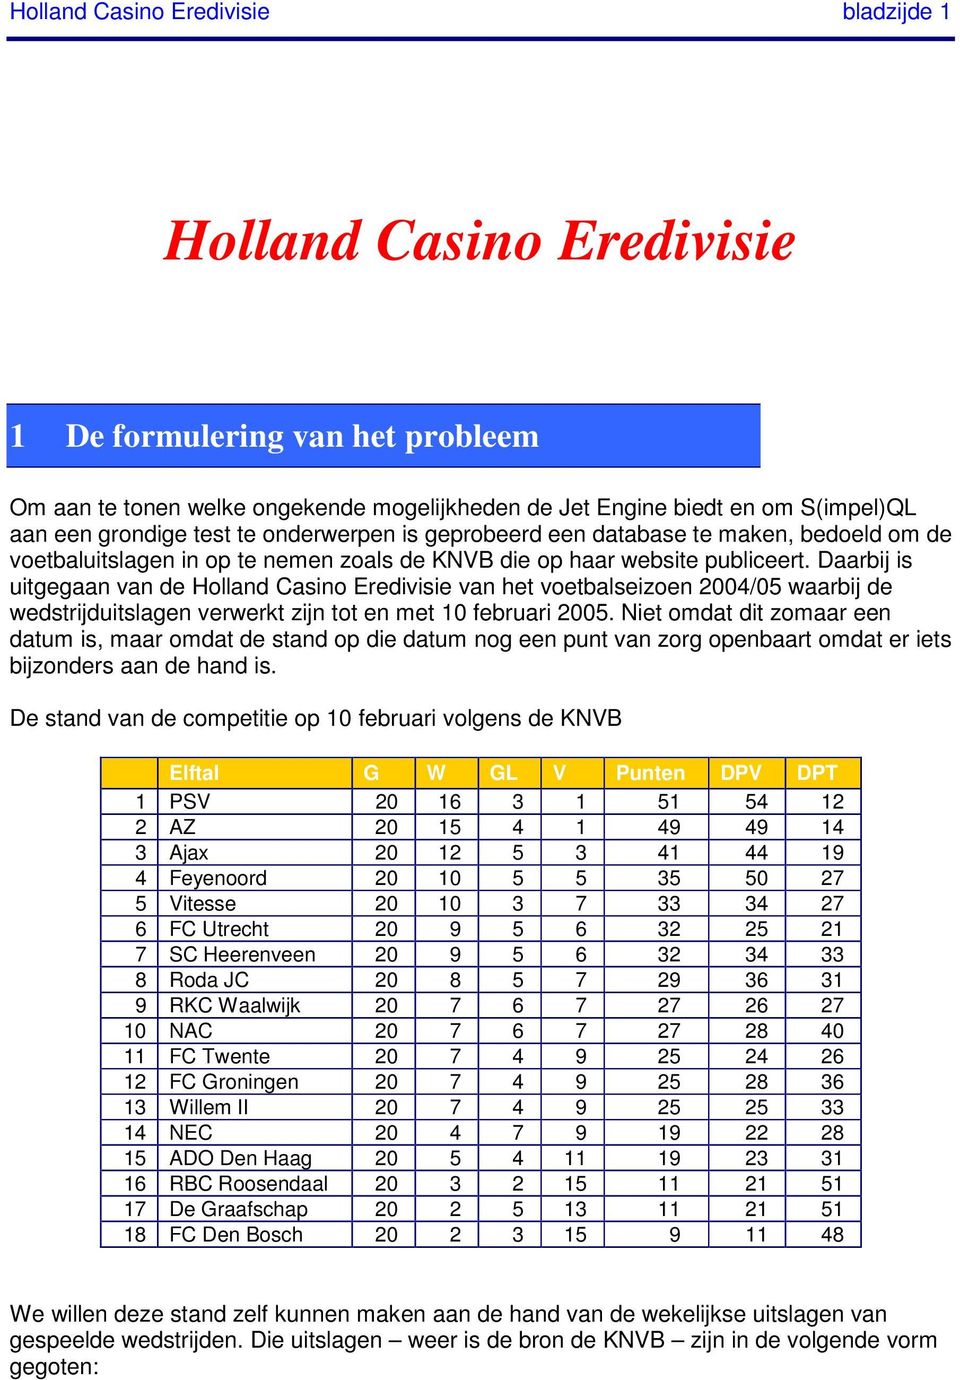 Daarbij is uitgegaan van de Holland Casino Eredivisie van het voetbalseizoen 2004/05 waarbij de wedstrijduitslagen verwerkt zijn tot en met 10 februari 2005.